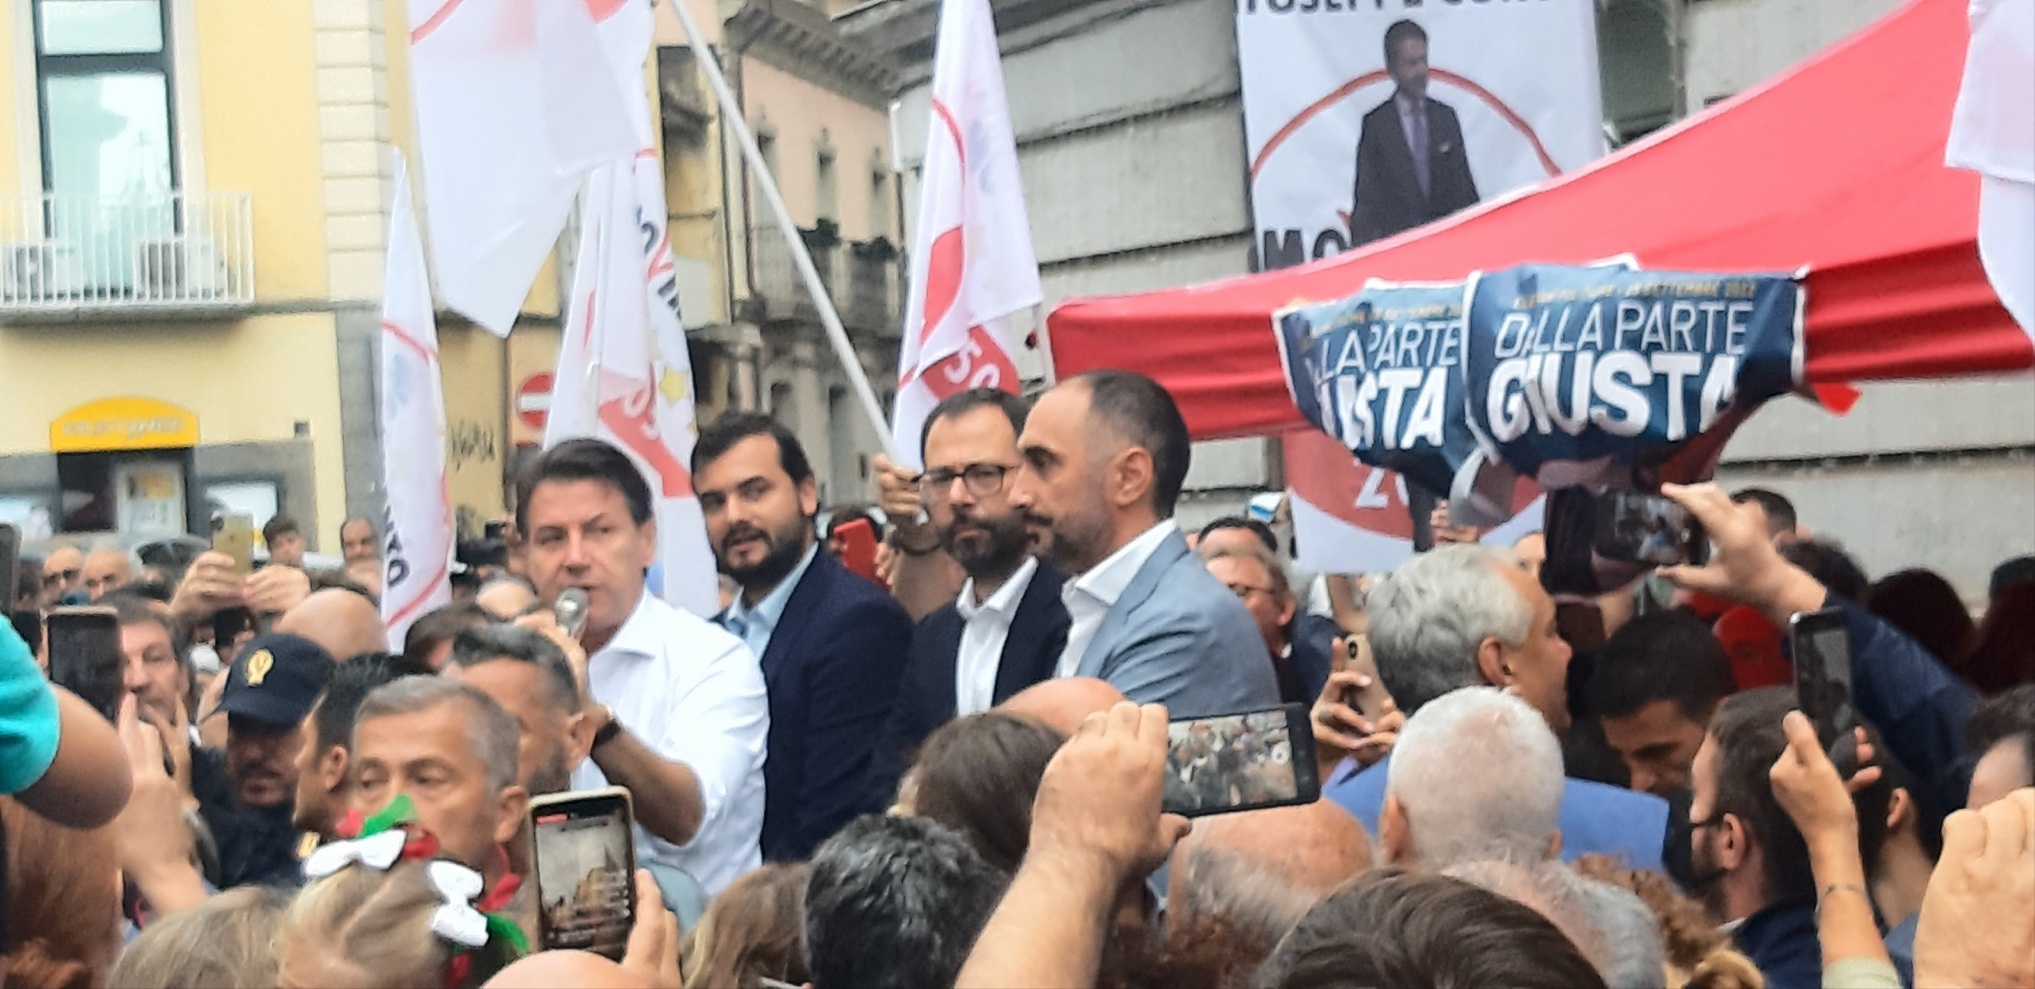 Avellino| M5S, folla al corso per Conte: noi coerenti e responsabili, altro che Pd